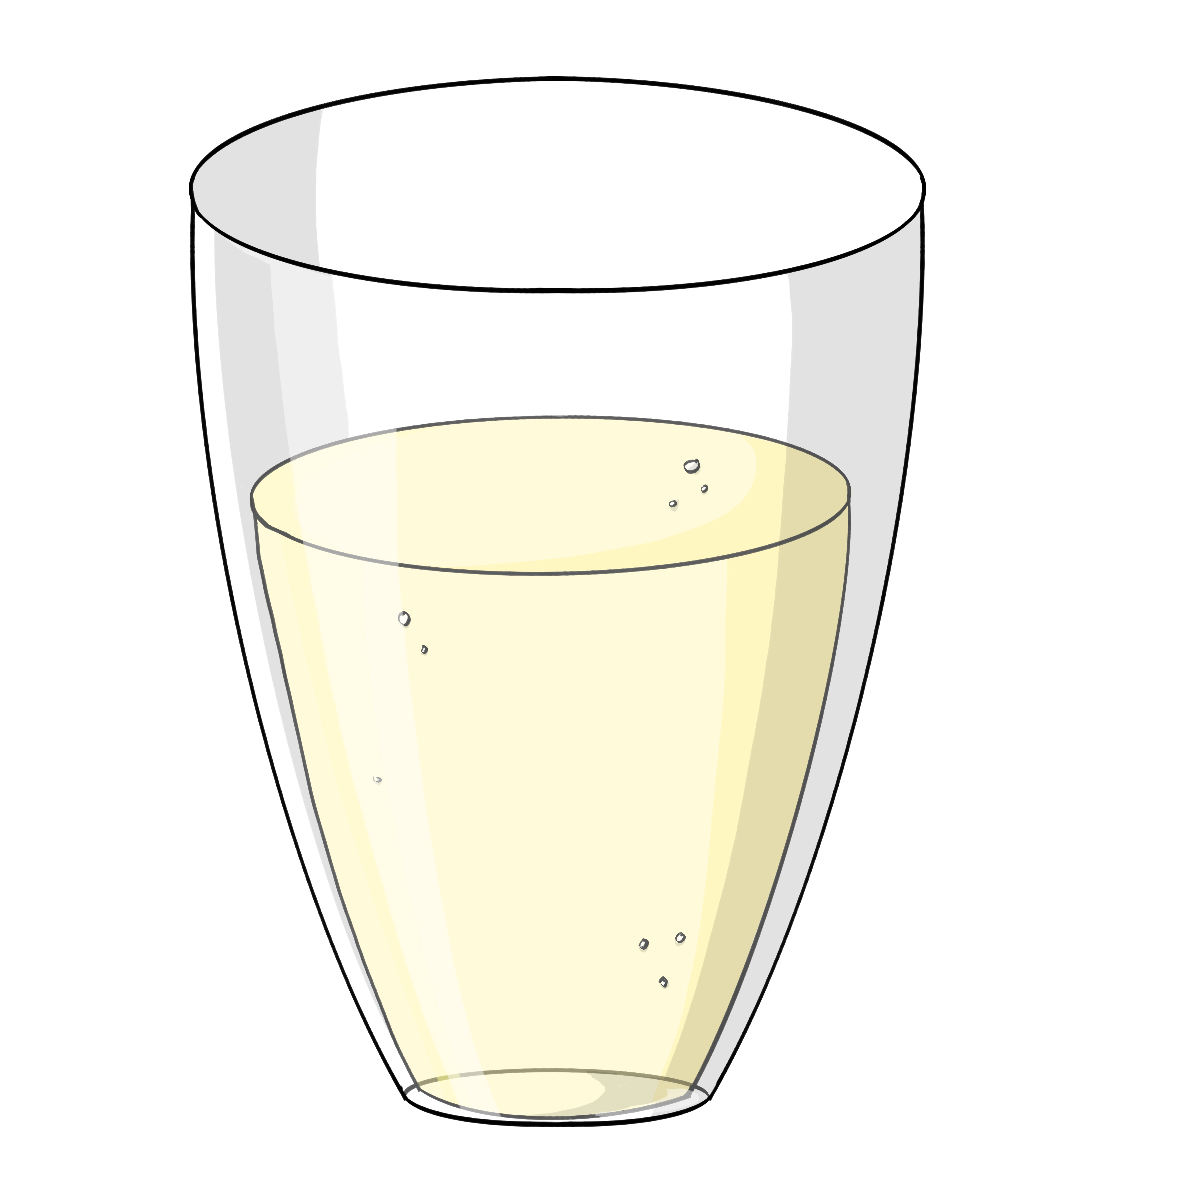 Ein Glas mit einer hellgelben Flüssigkeit.